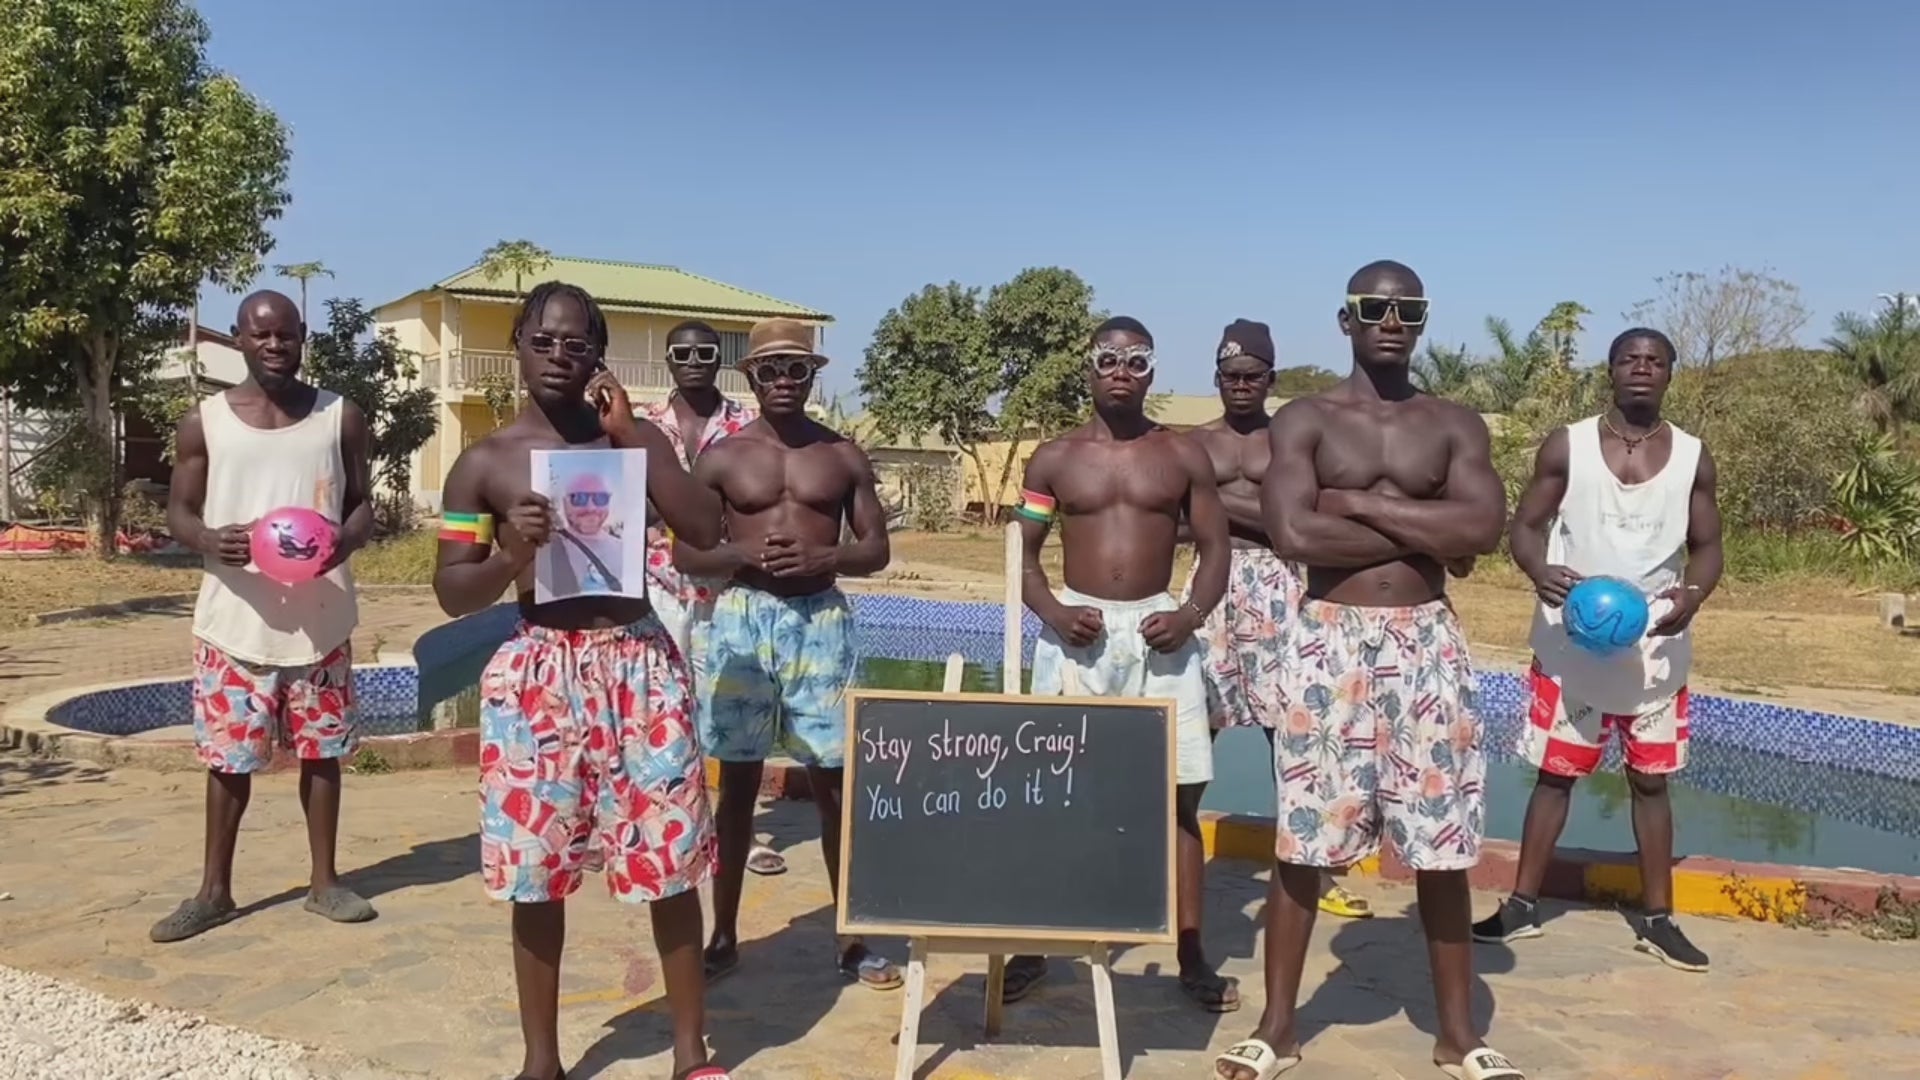 African Grass Skirt Team –